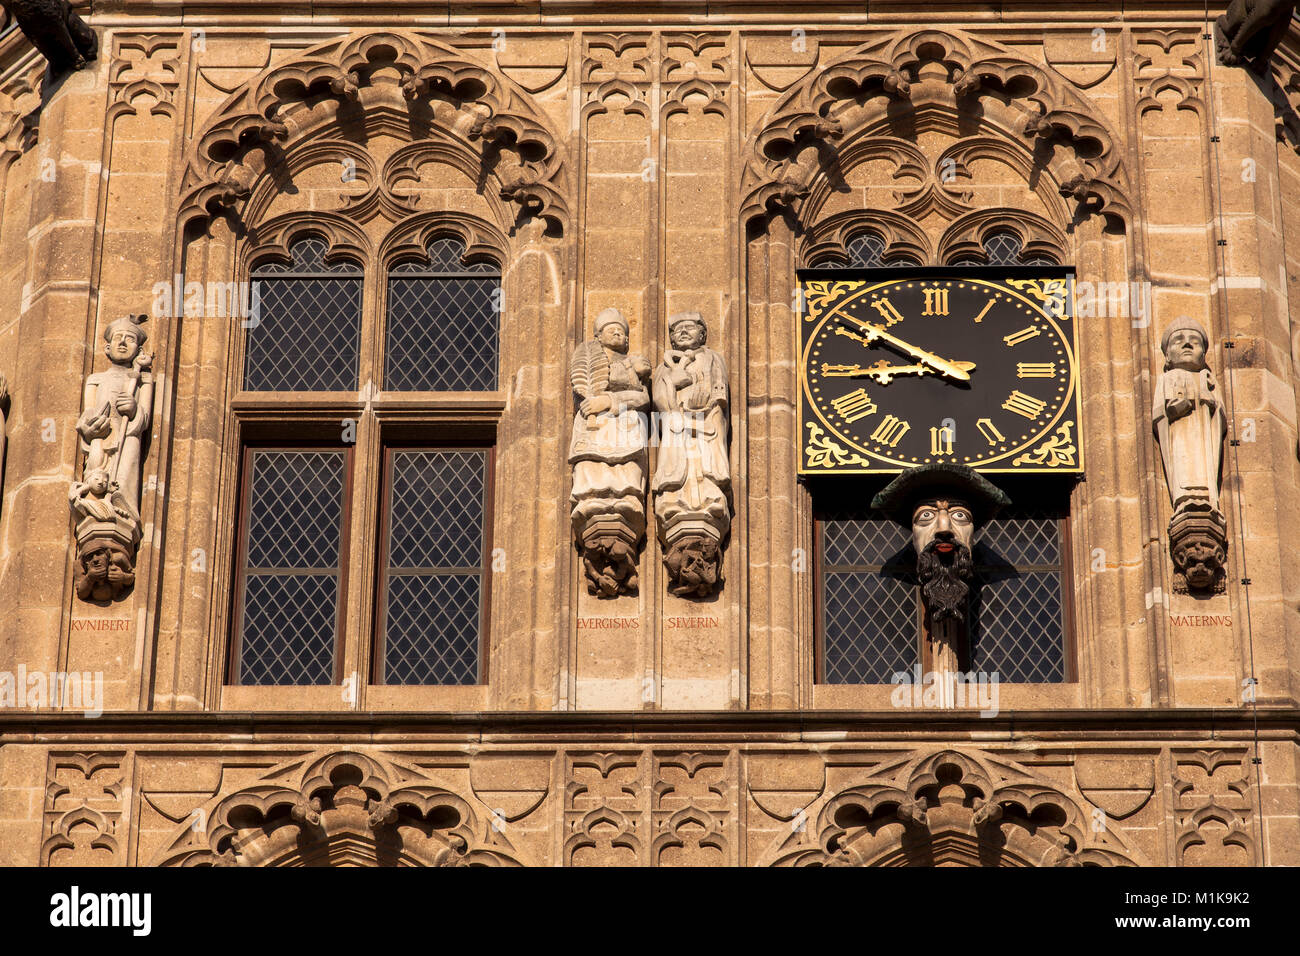 Deutschland, Köln, der Turm der historischen Rathaus im alten Teil der Stadt, unter der Uhr sehen Sie die Platzjabbeck, ein Gesicht, dass o erstreckt sich Stockfoto